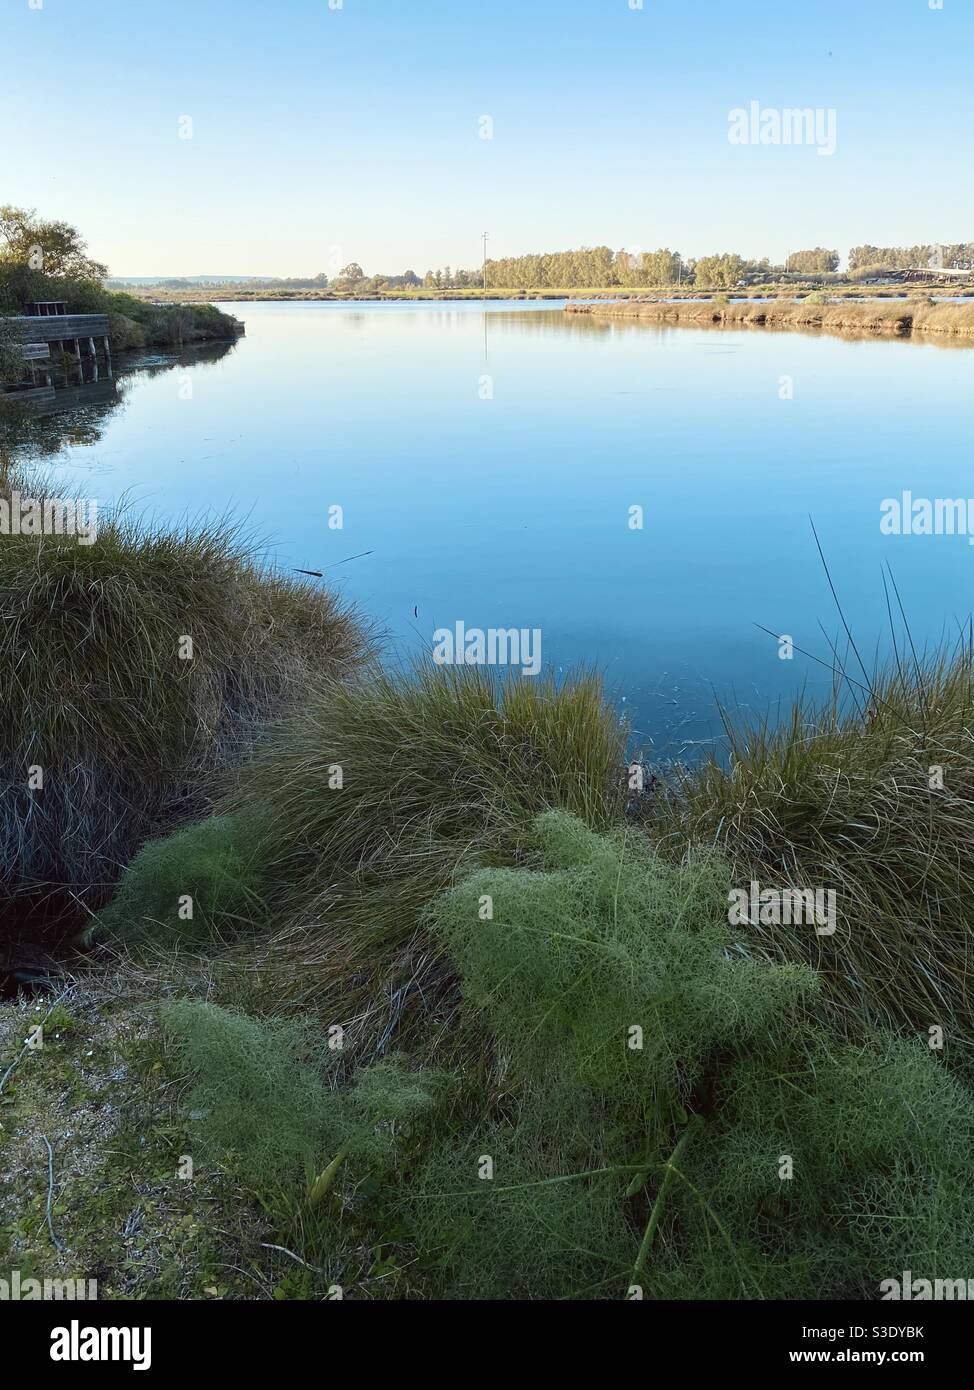 Un paesaggio paludoso in formato ritratto con un laghetto circondato dalla tipica vegetazione acquatica e da piante selvatiche appartenenti a questo tipo di ambiente. Foto Stock